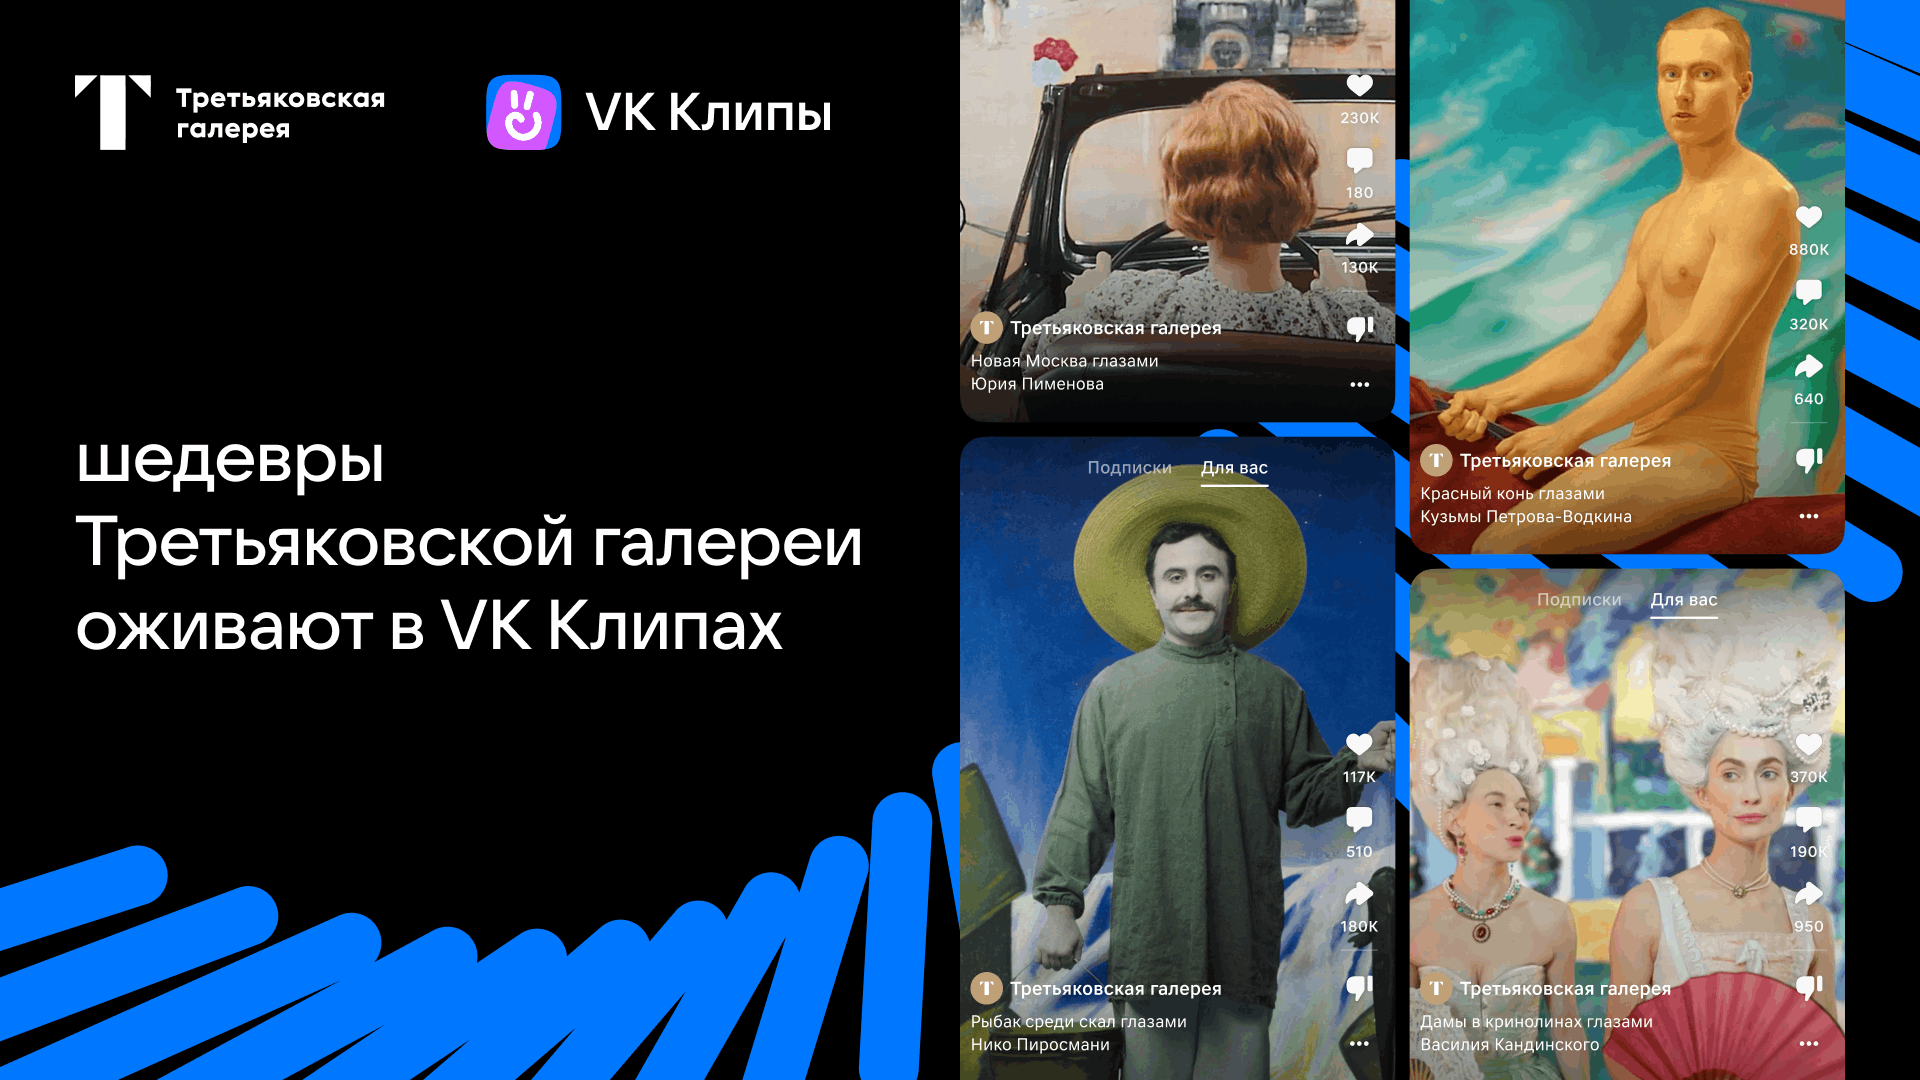 Пользователи «VK Клипов» смогут увидеть ожившие картины Малевича, Кандинского и других художников XX века из коллекции Третьяковской галереи